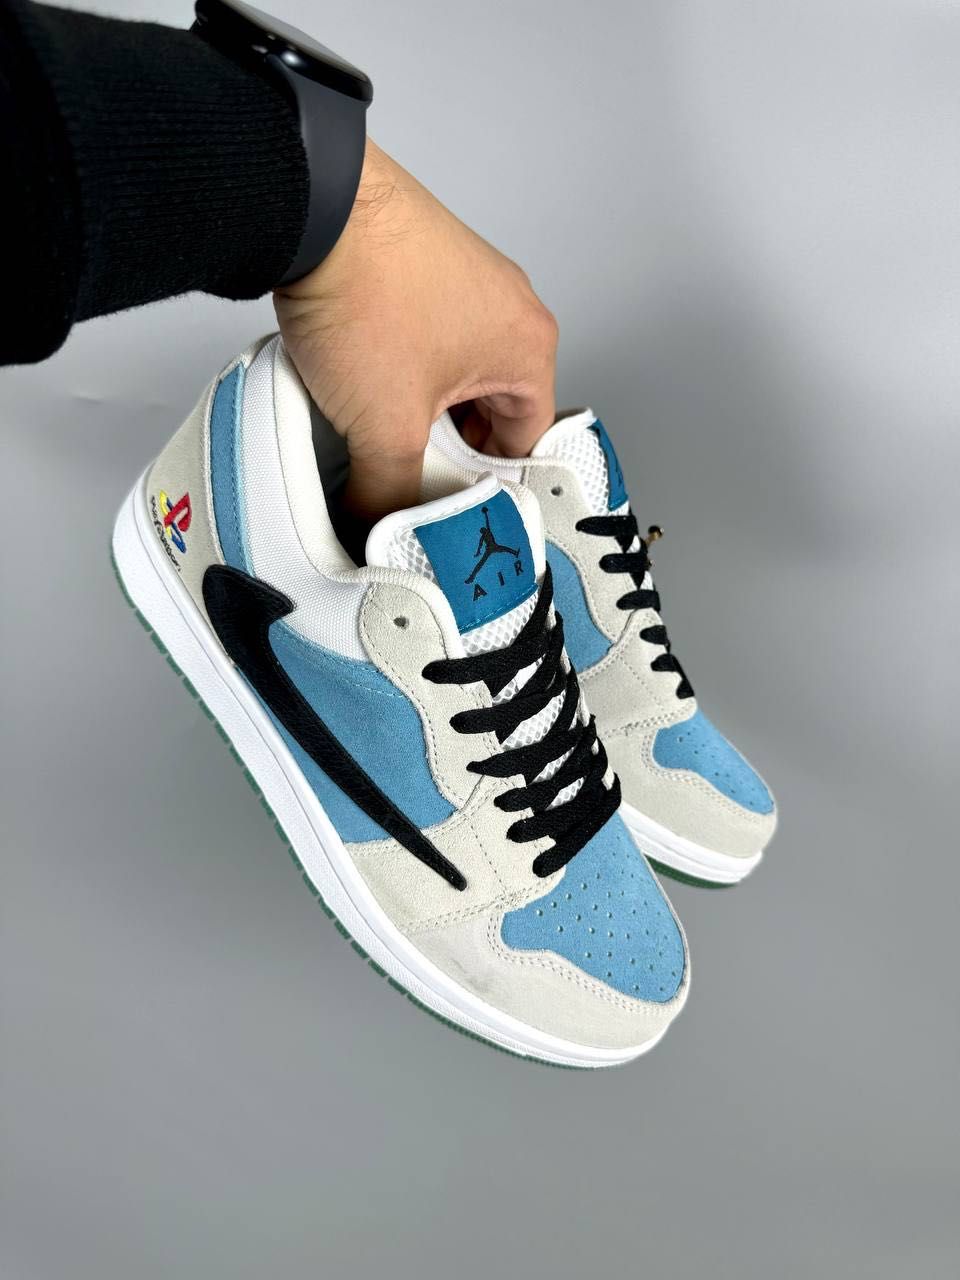 Кросівки Nike Air Jordan, кросовки Найк Аір Джордан бежево - голубі